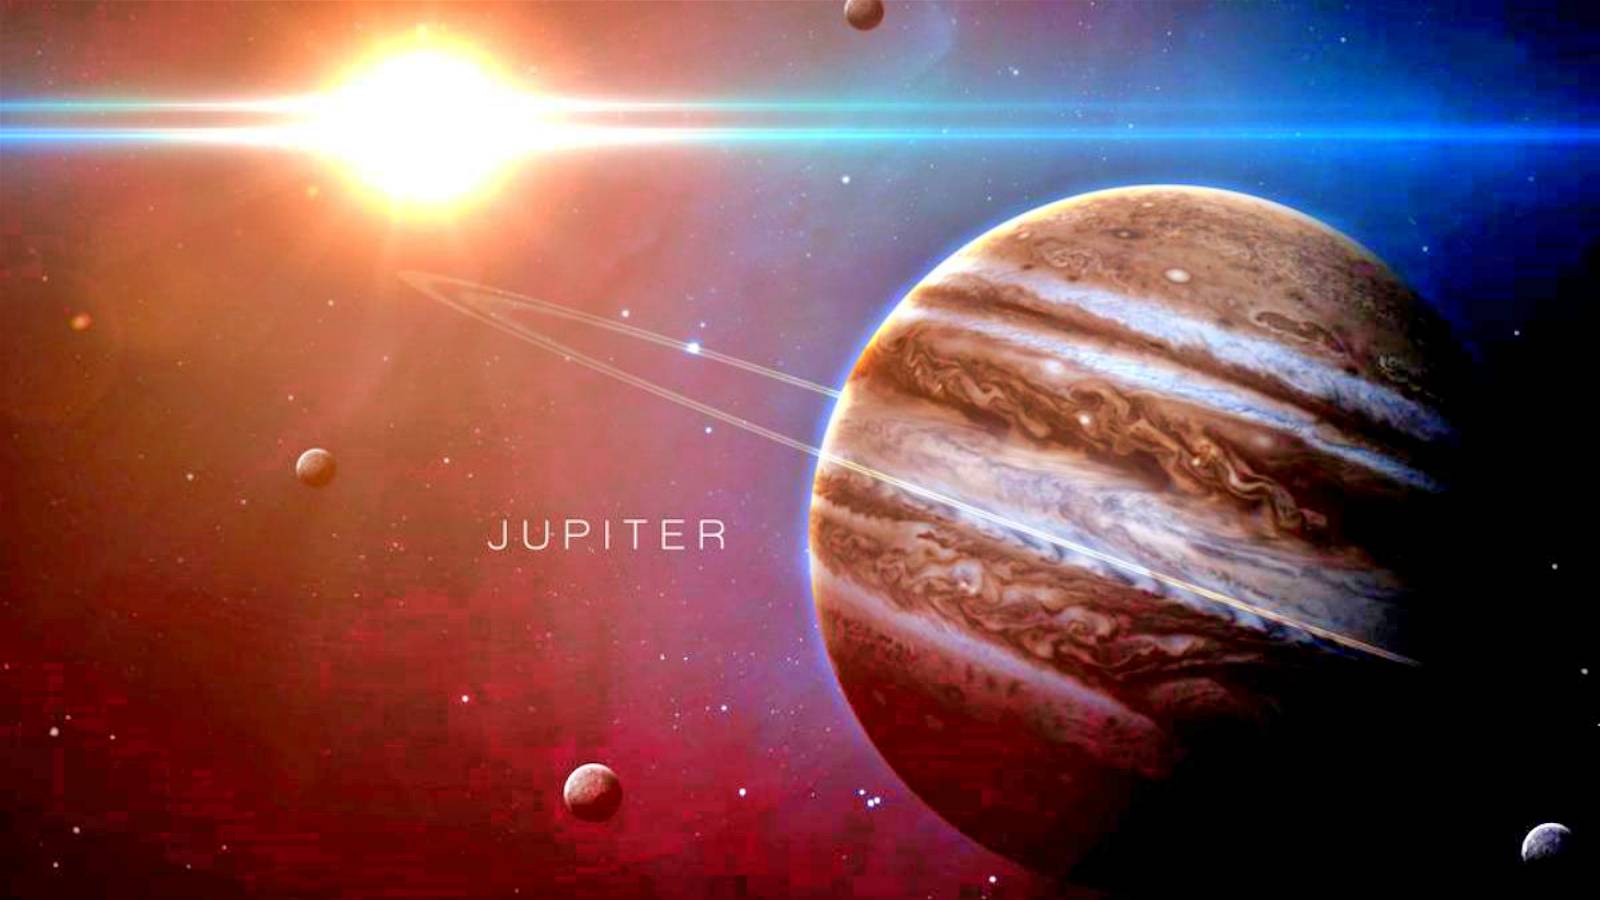 Planeten Jupiter Imponerande NASA-bild avslöjar kolossala stormar